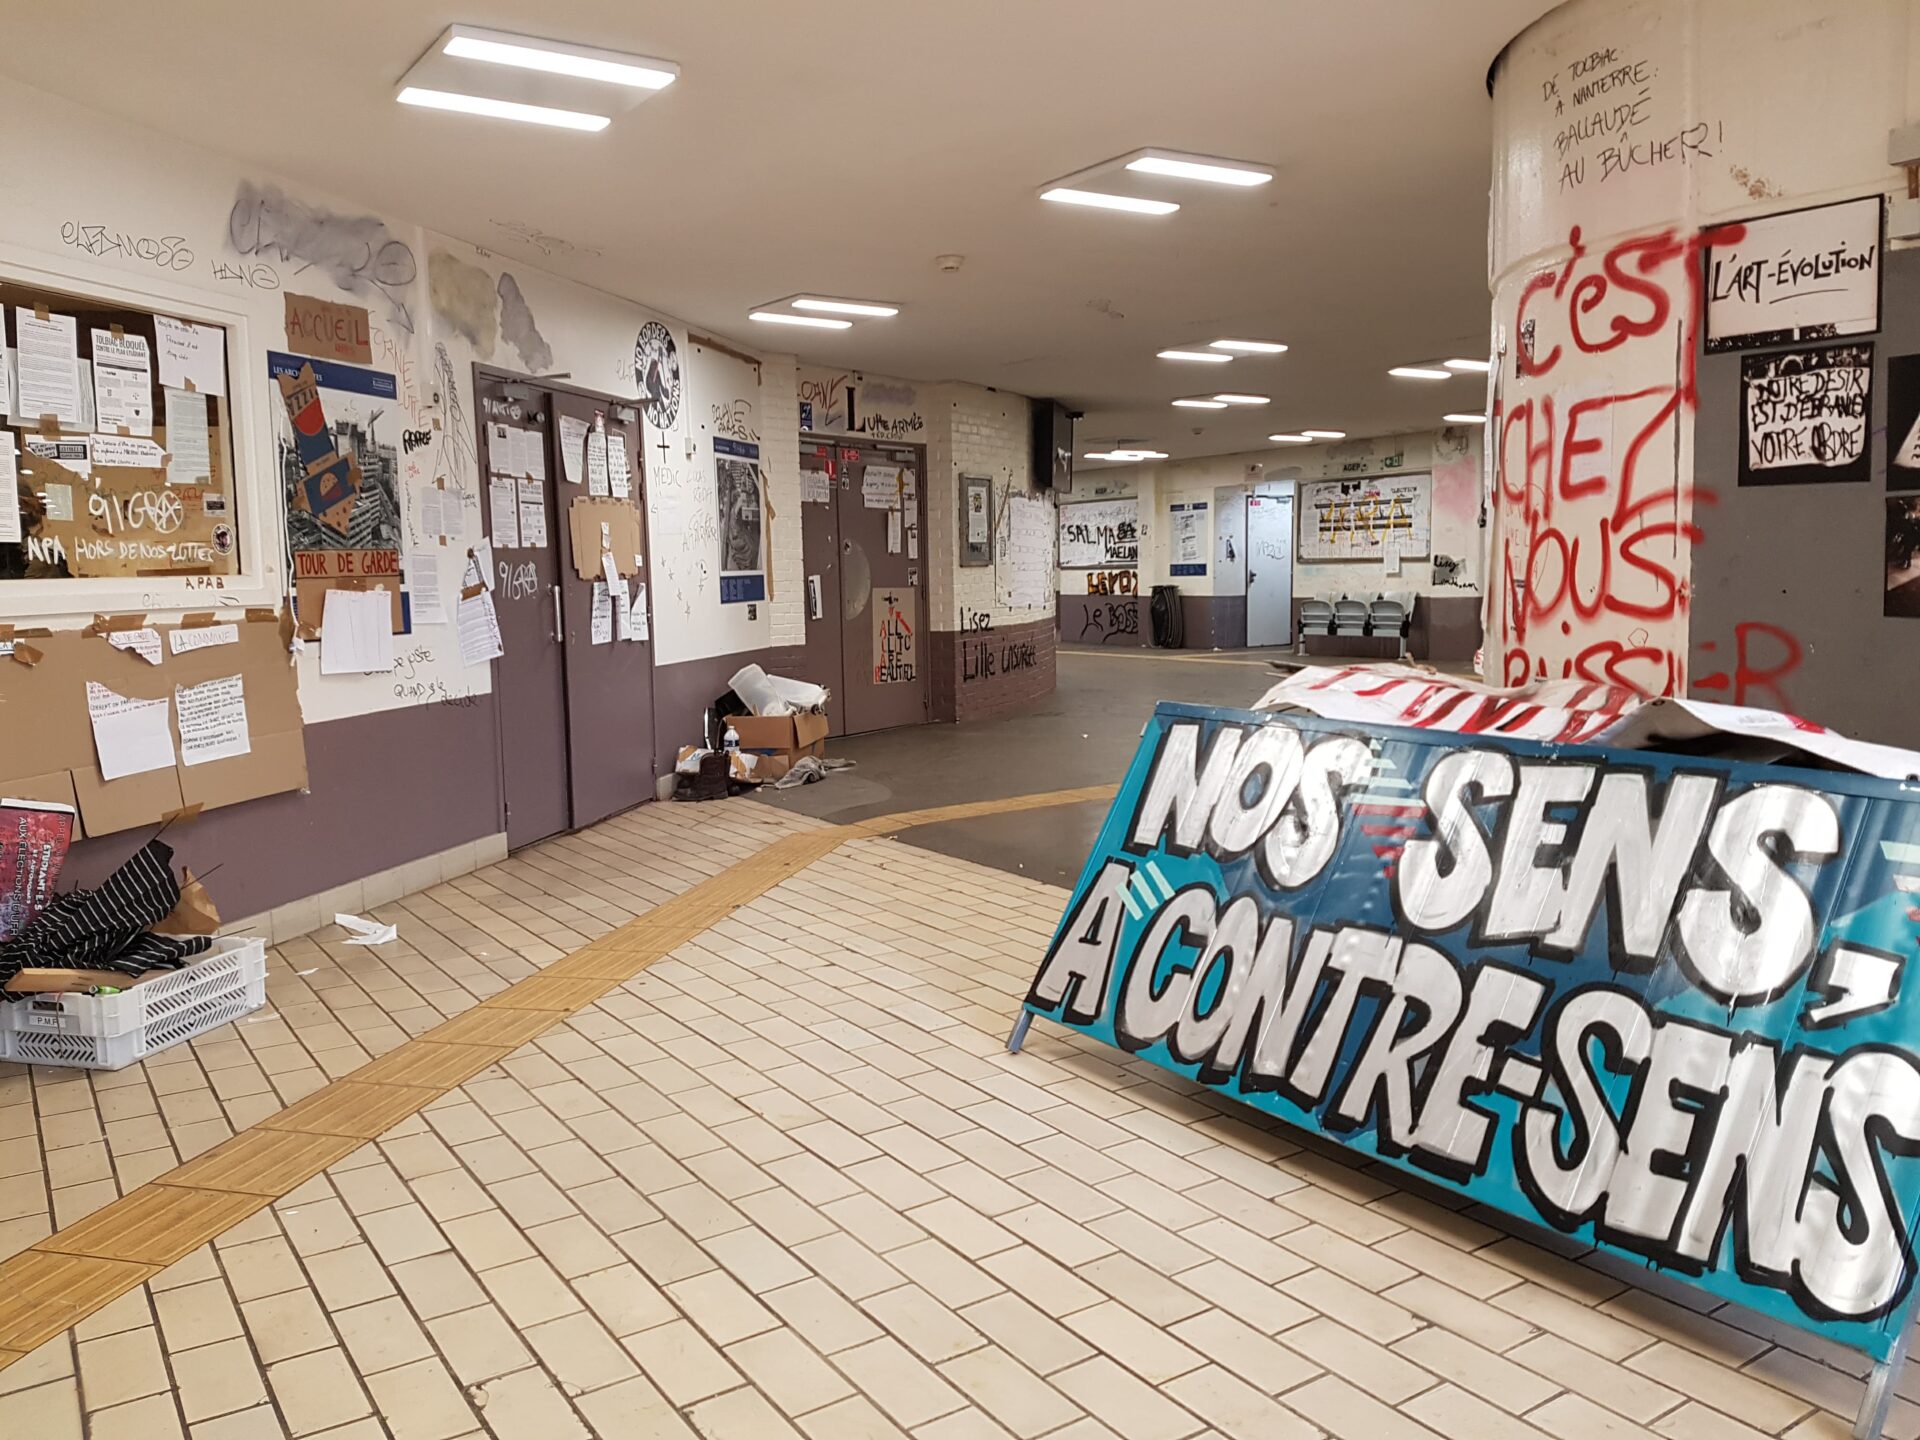 L'université de Tolbiac, alors bloquée par des étudiants (©Capucine Bouillot)